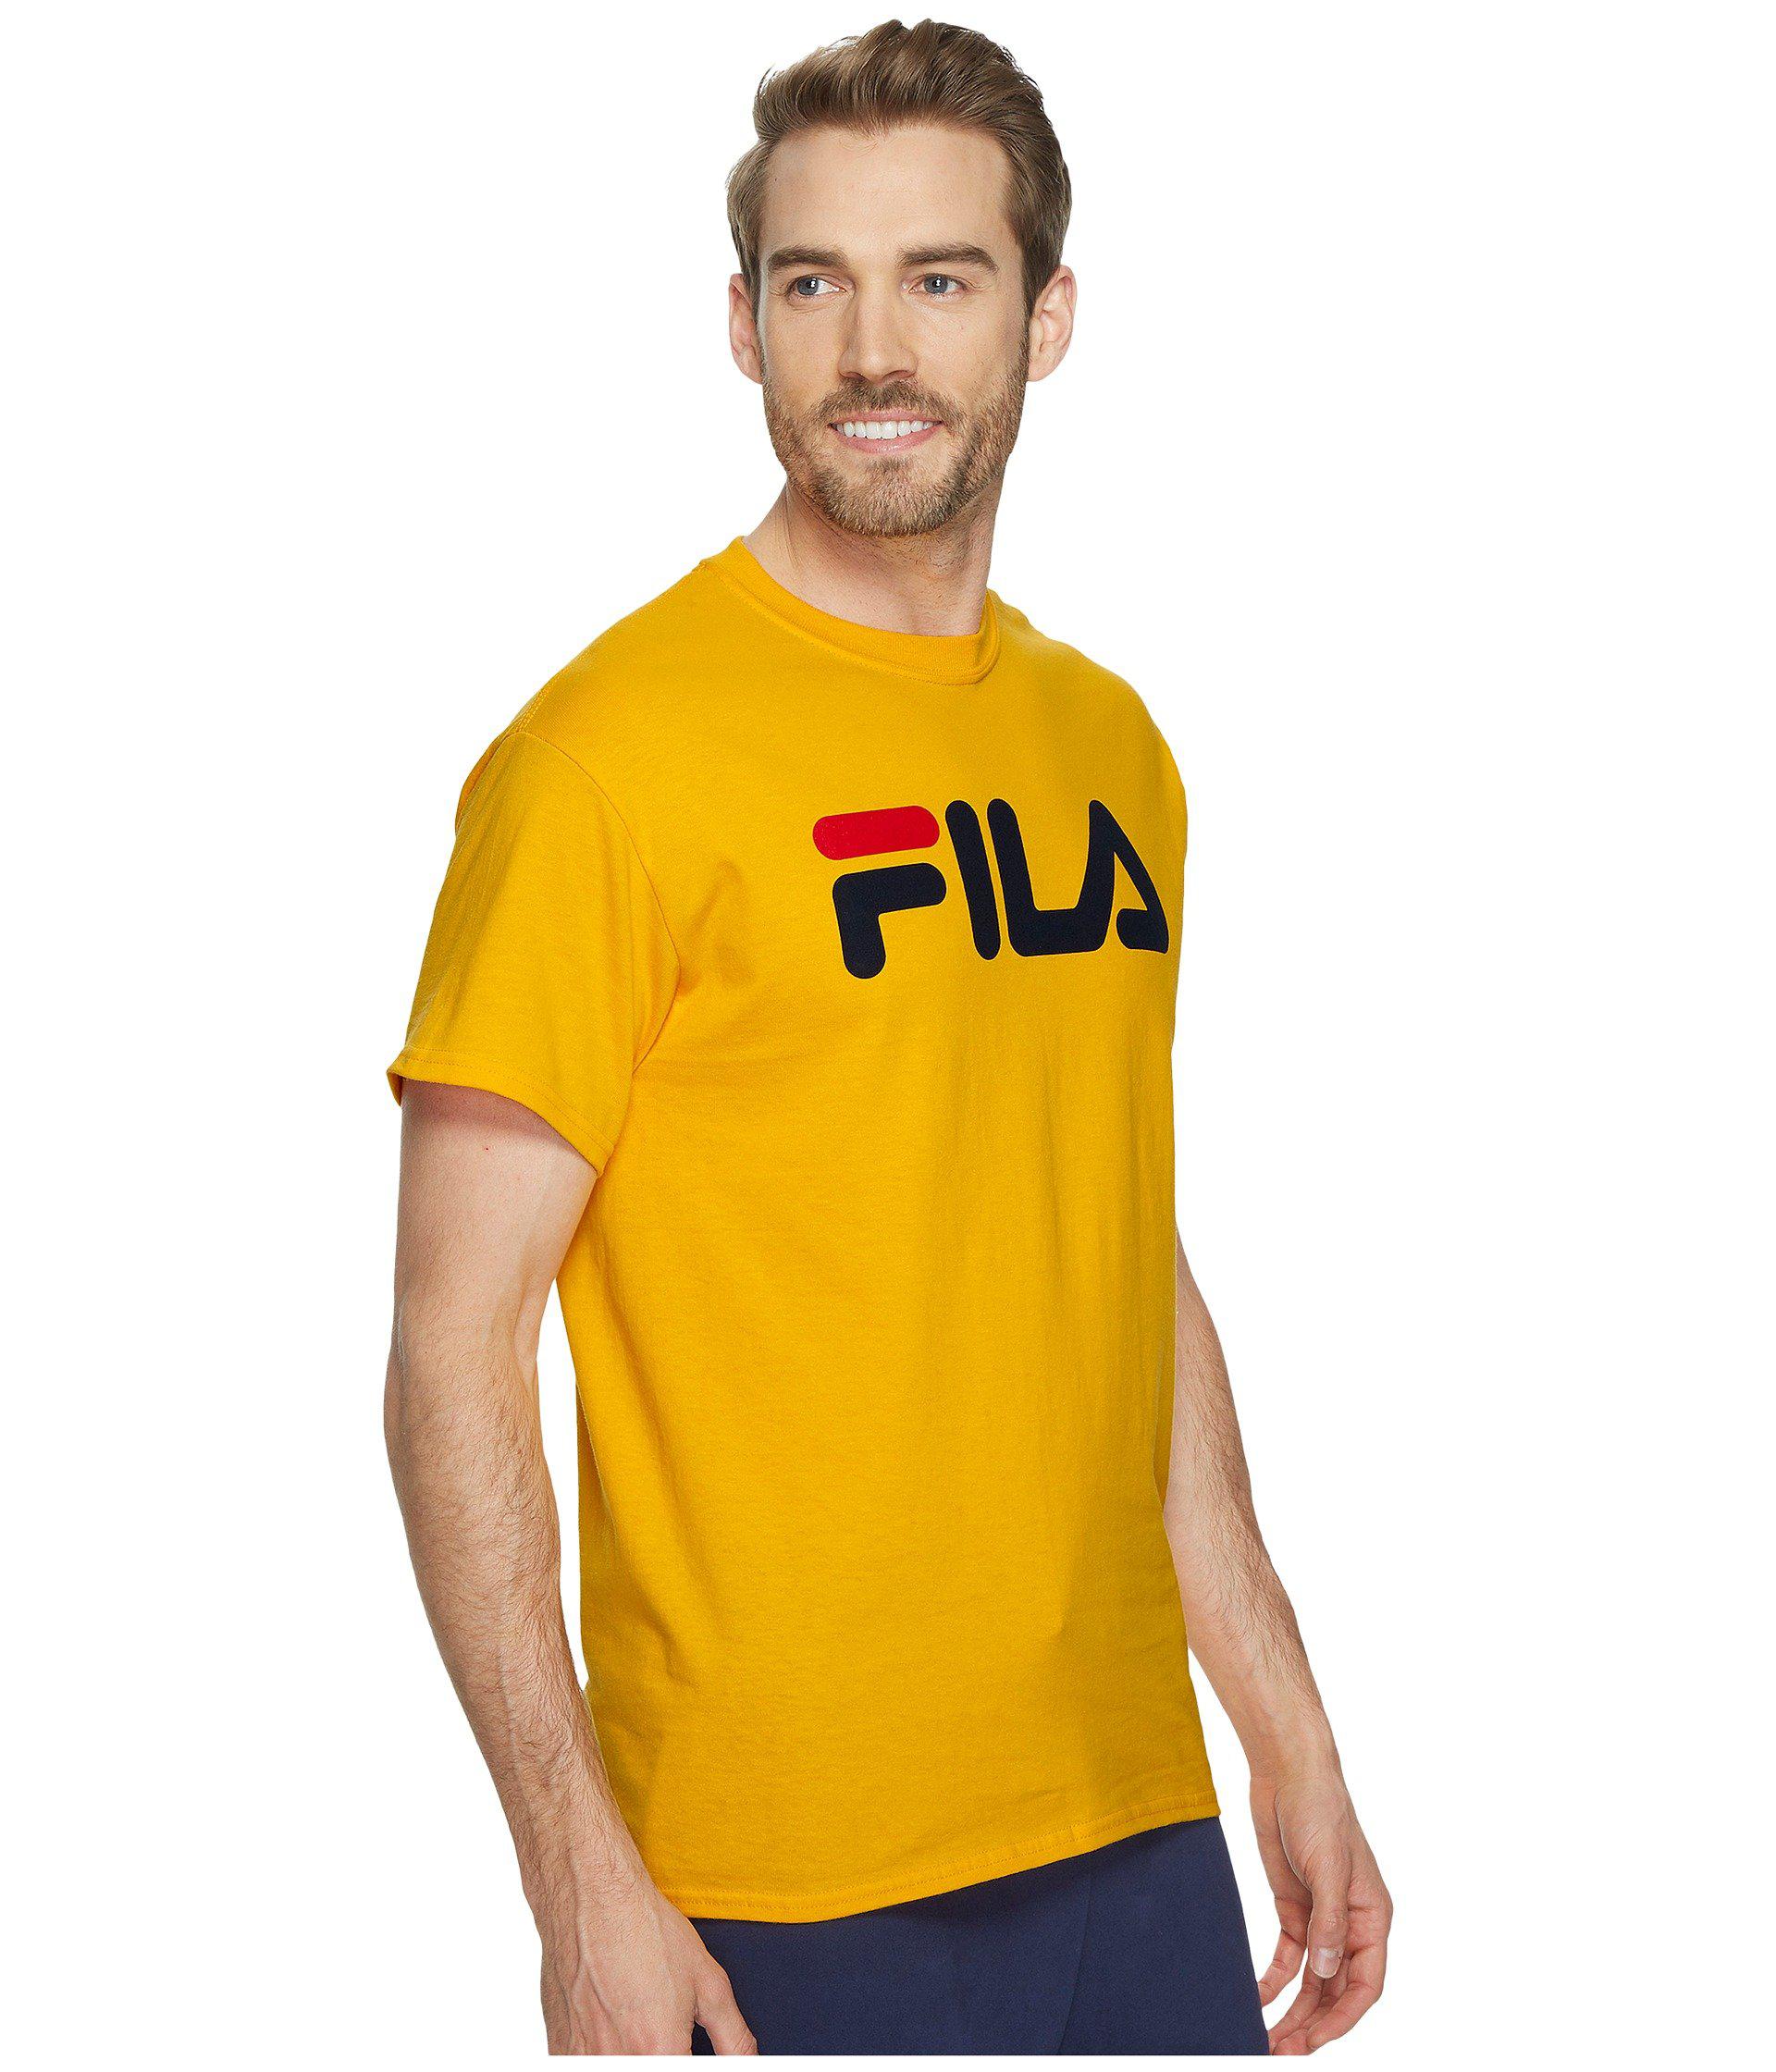 fila t shirt yellow